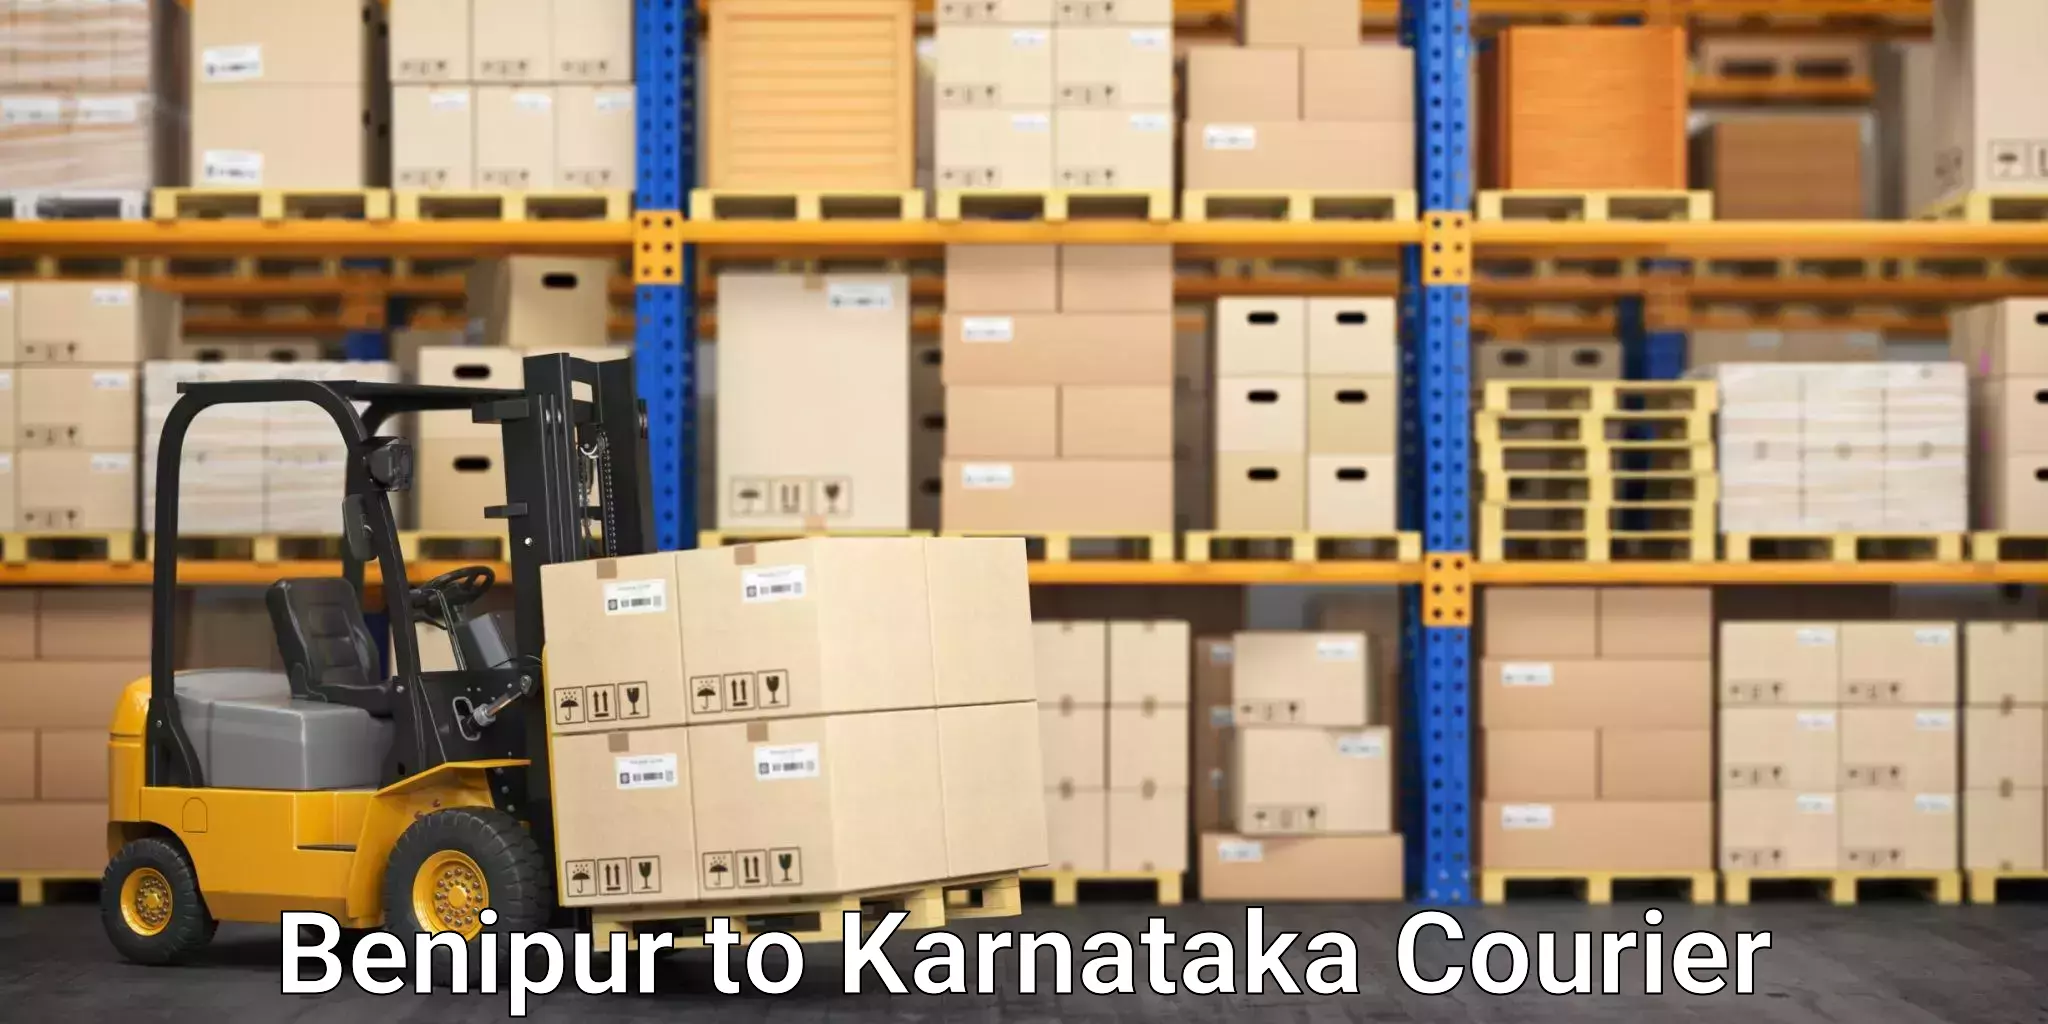 Furniture transport professionals Benipur to Karnataka